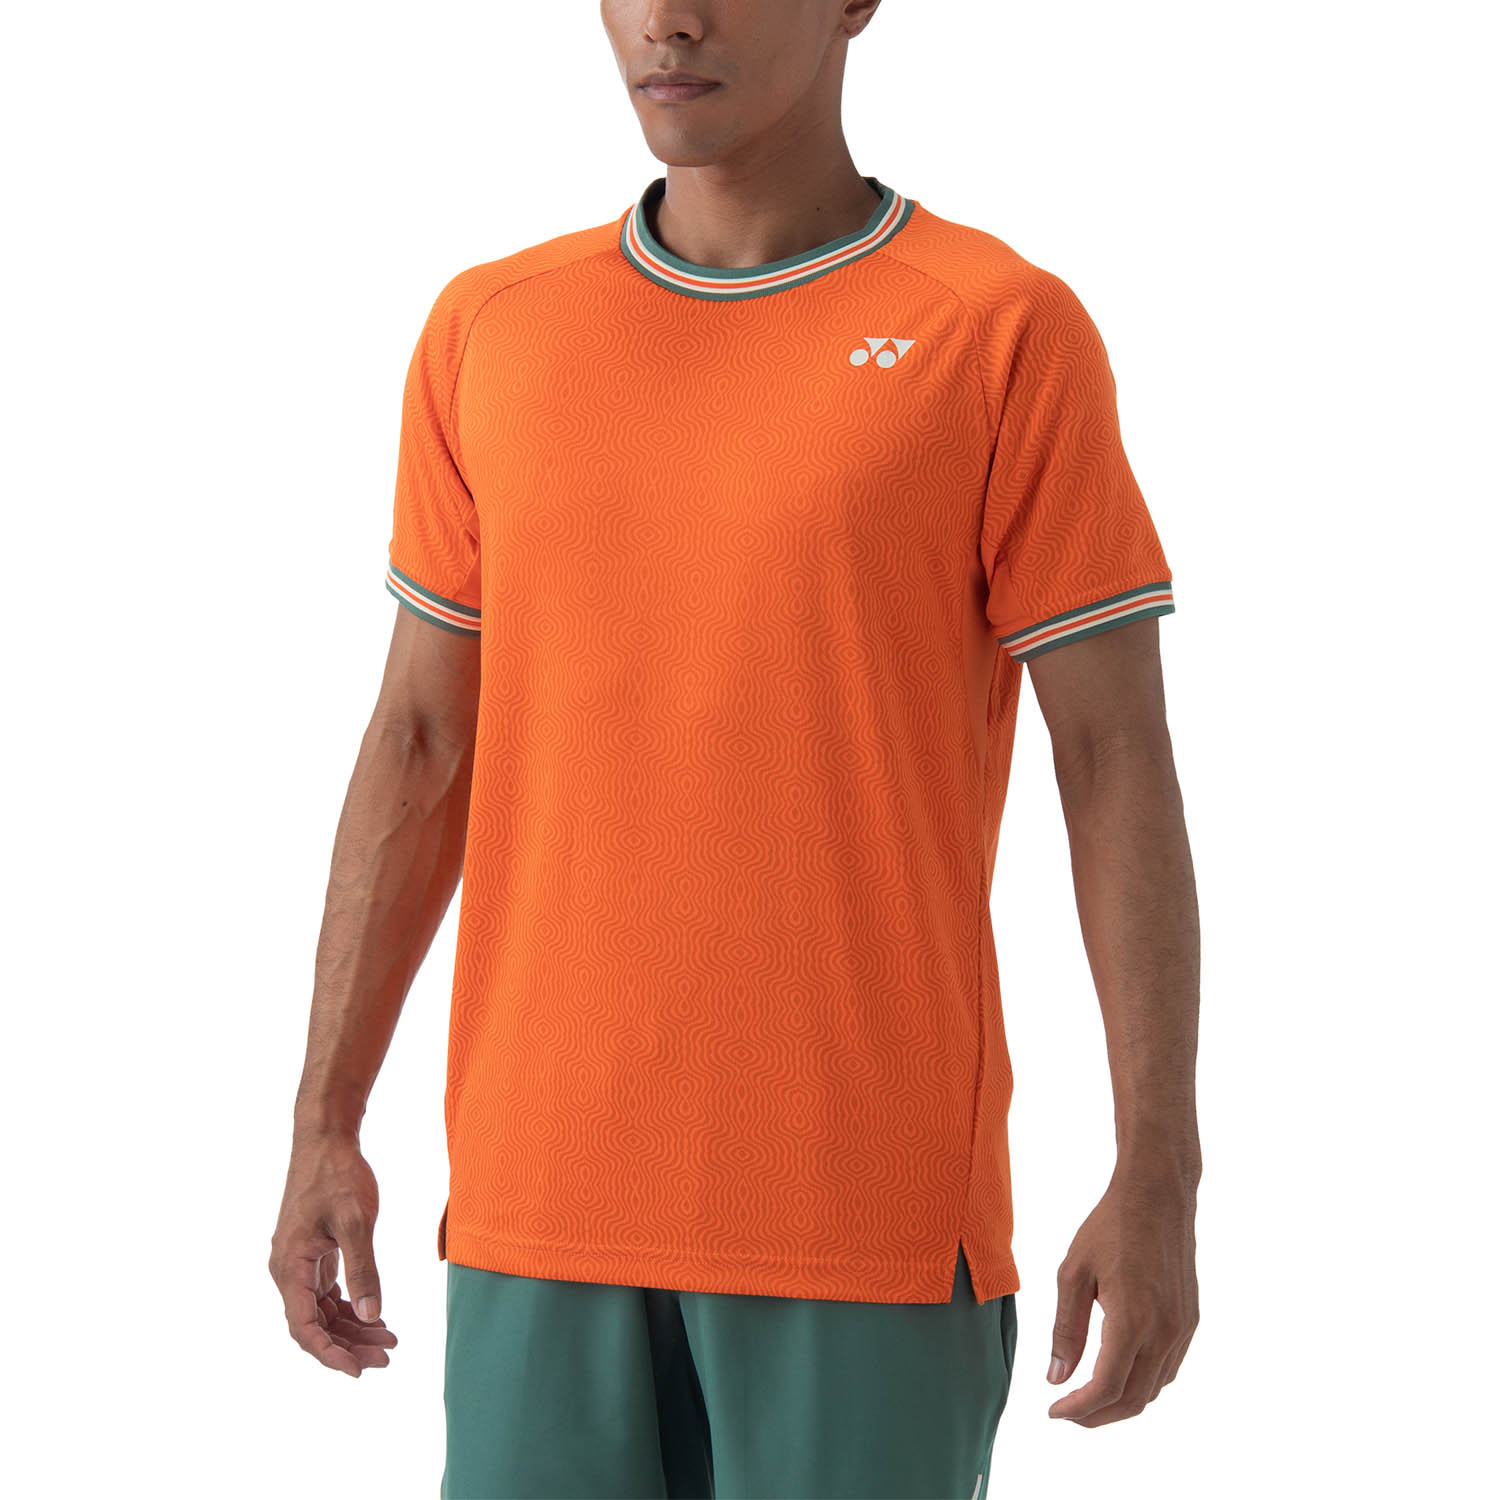 Yonex Paris Camiseta - Bright Orange